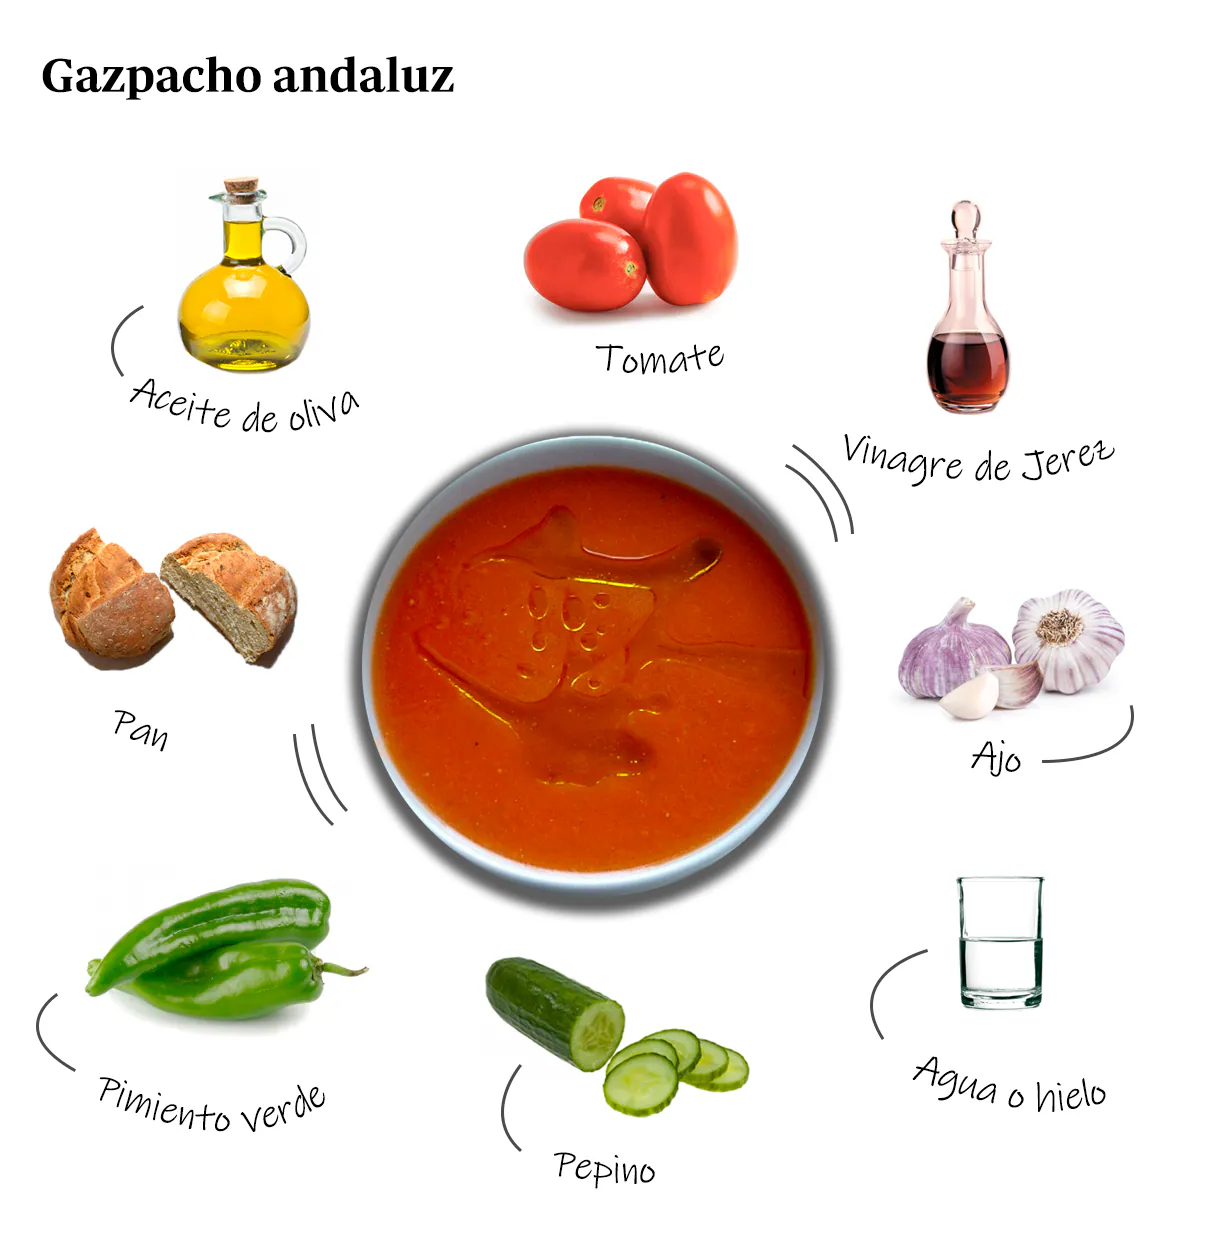 Receta del gazpacho andaluz